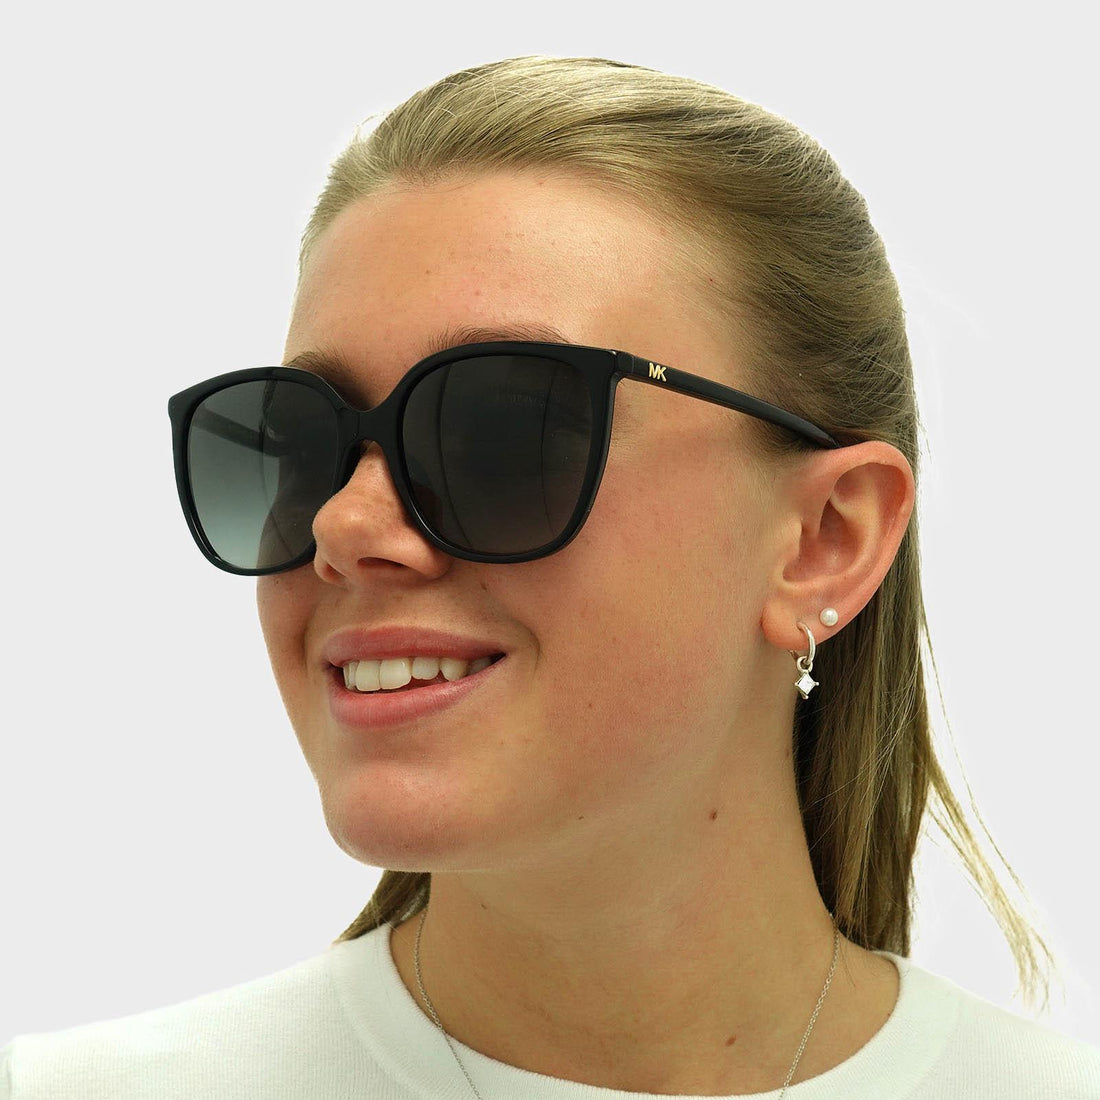 Michael Kors Anaheim MK2137U Sunglasses